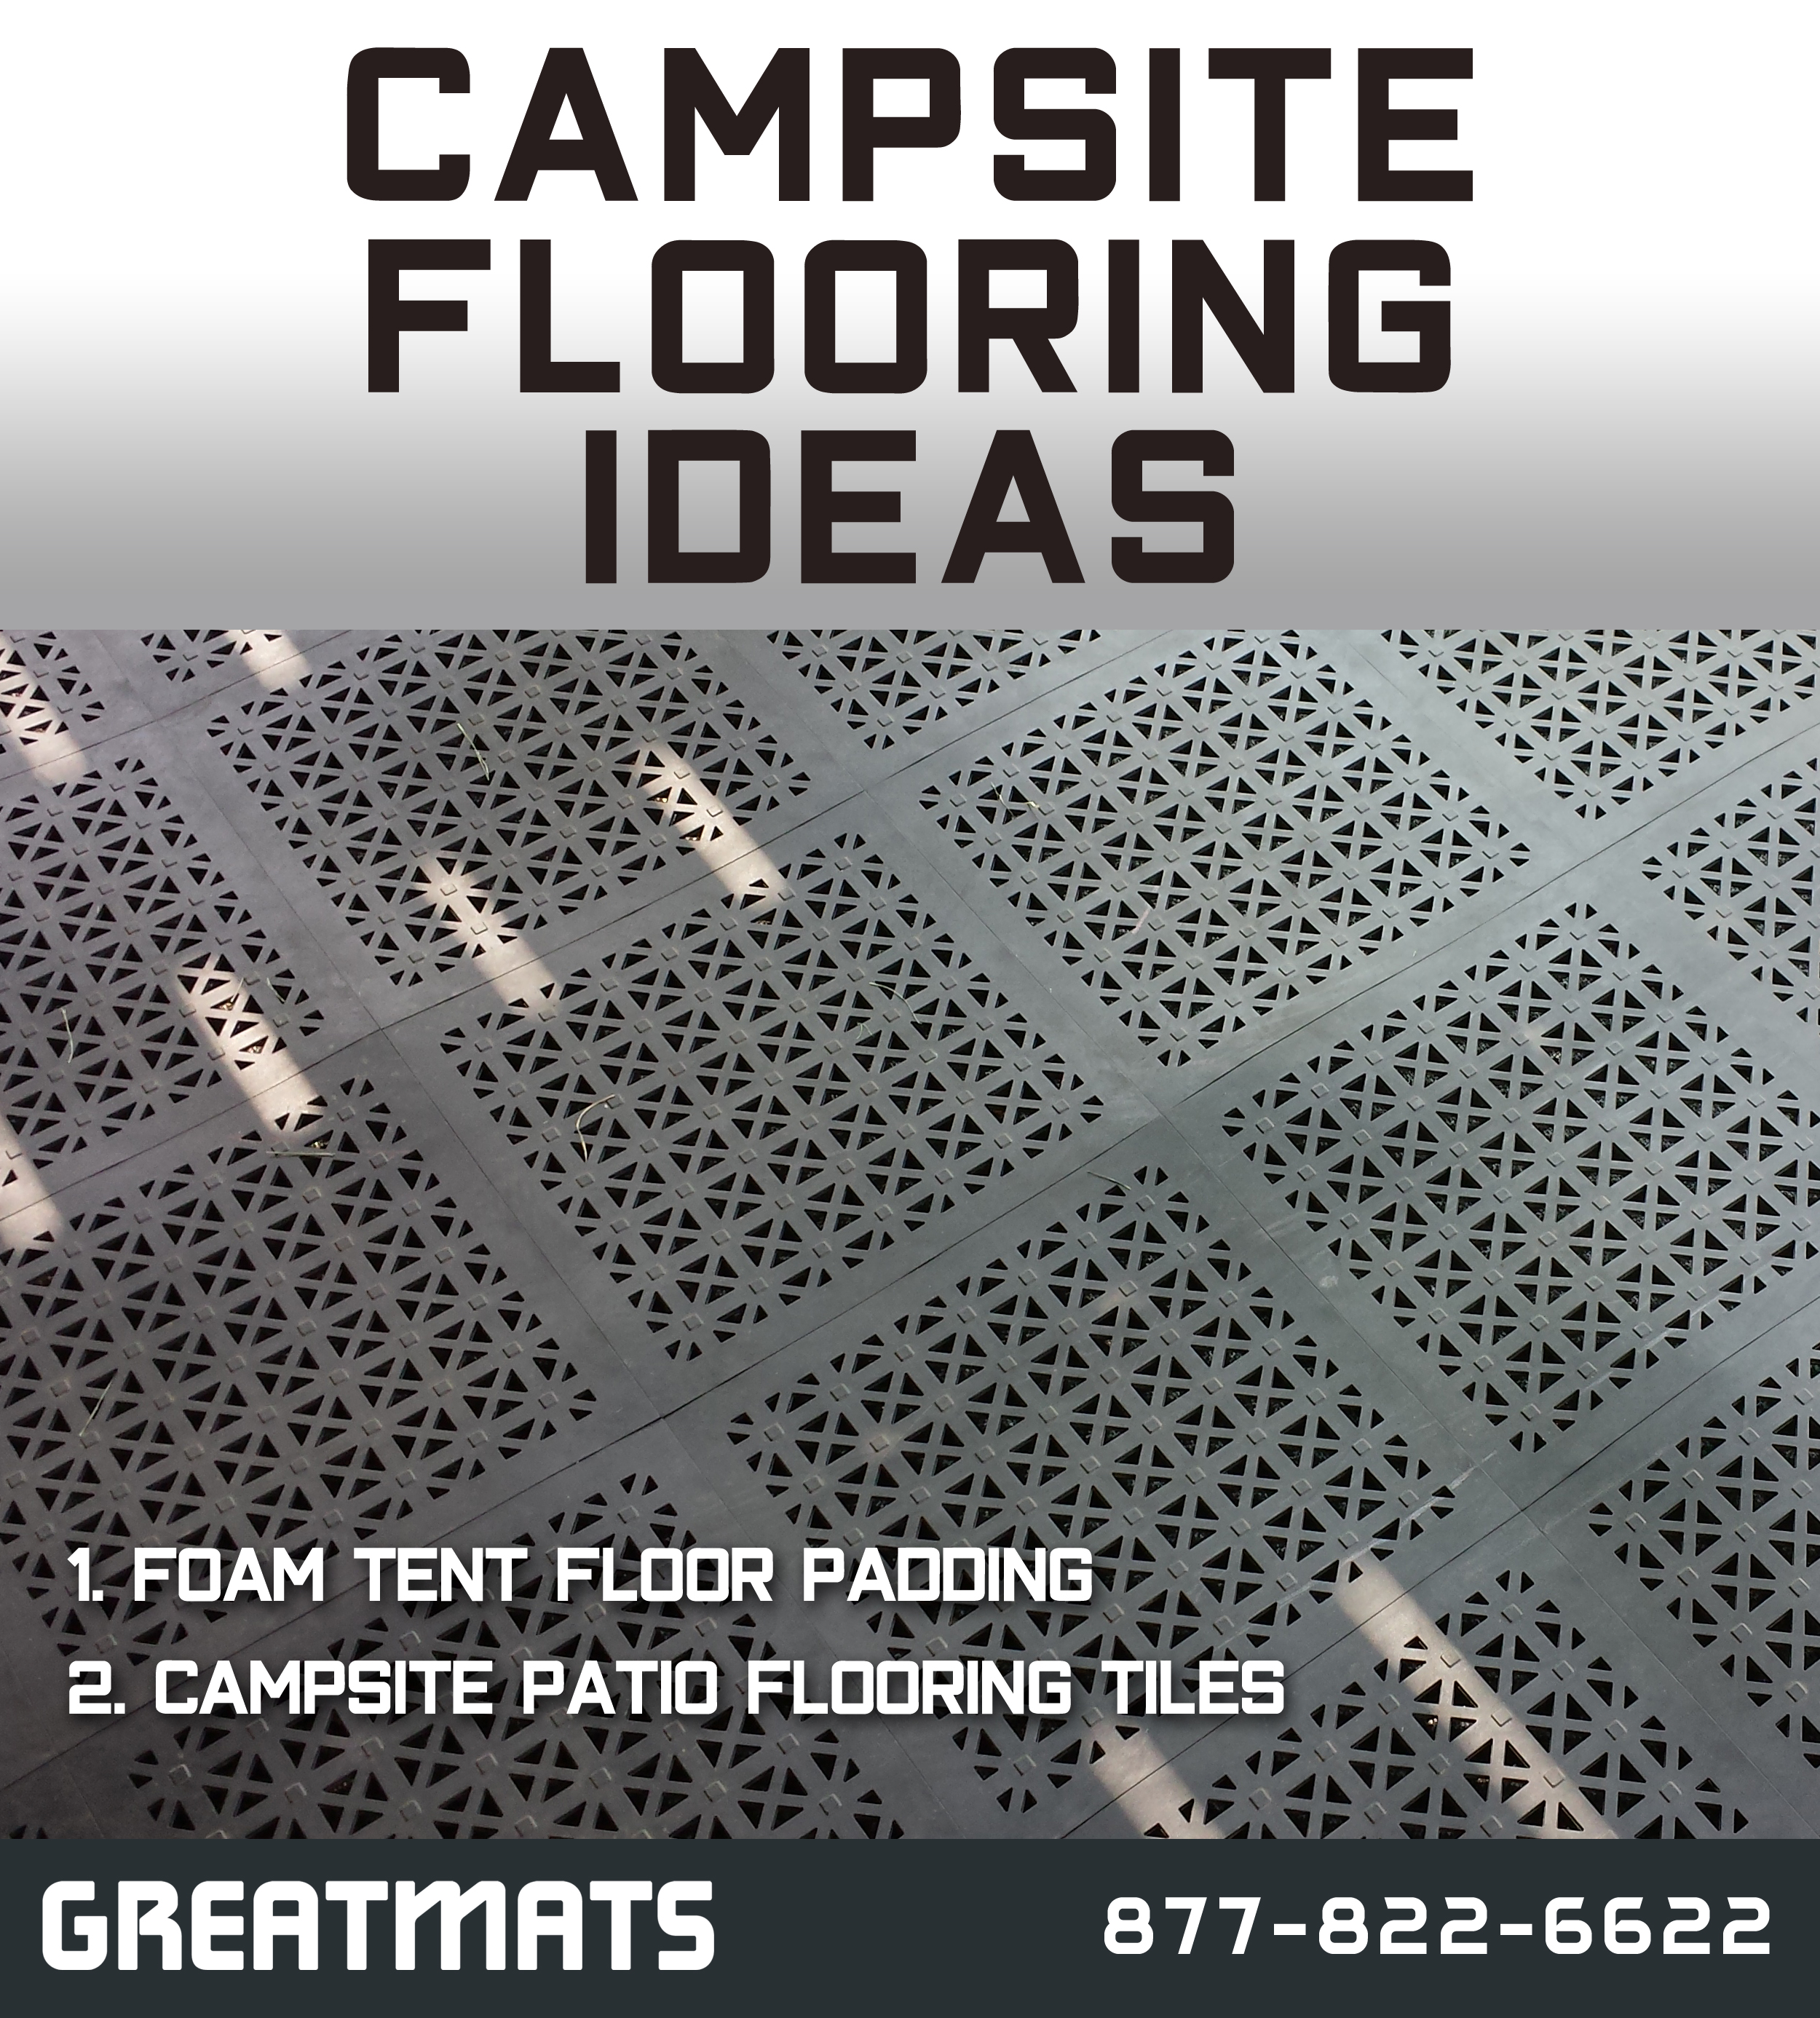 Campsite Flooring Ideas info graphic